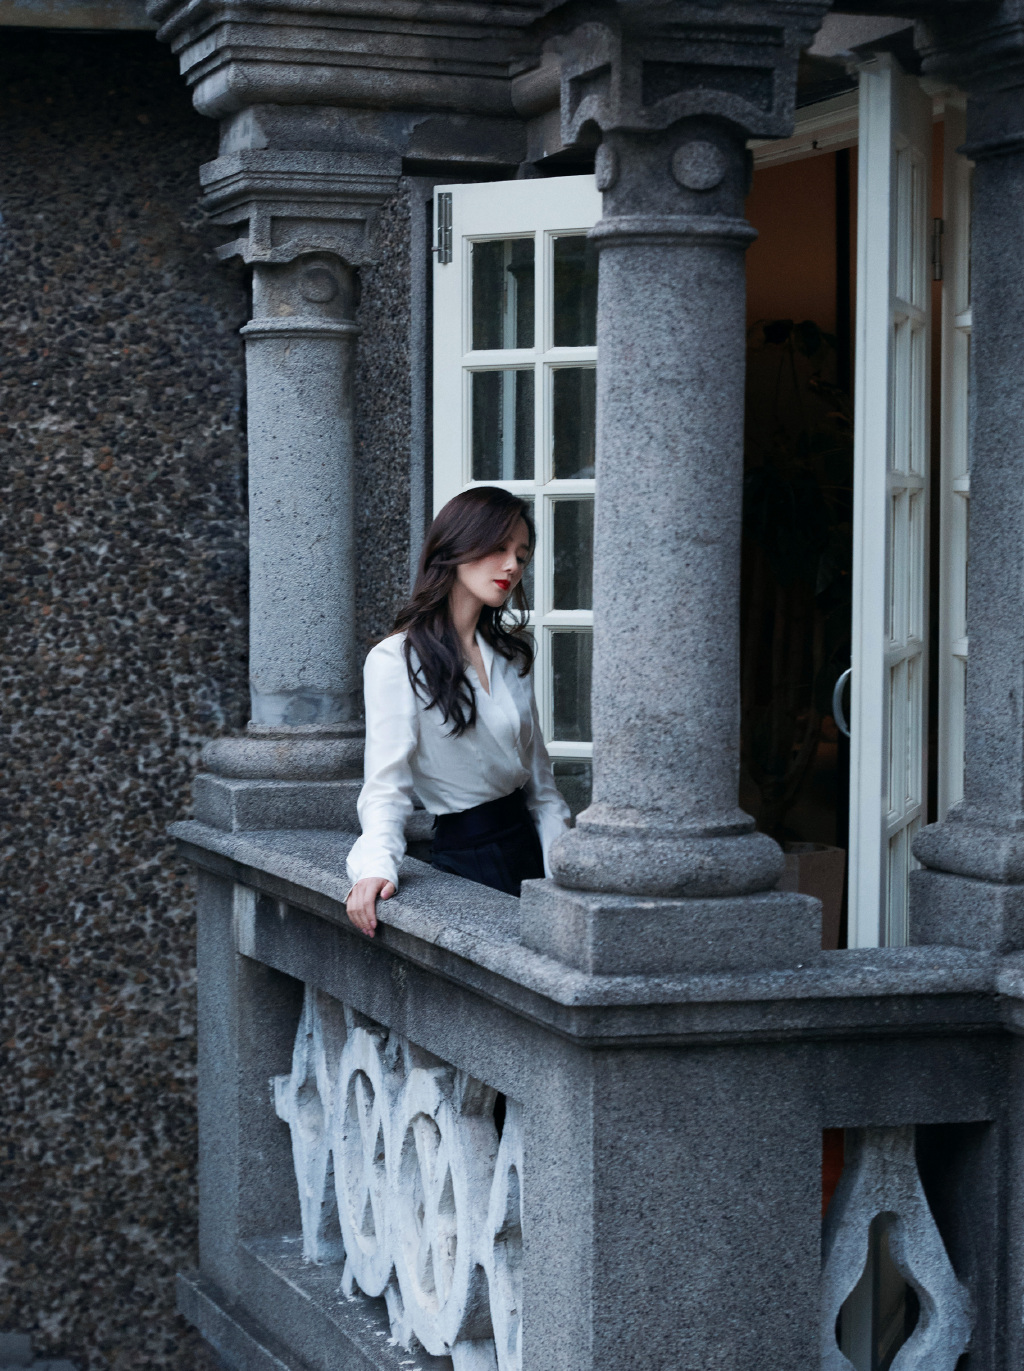 12月2日，刘诗诗参加COSMO时尚盛典的一组绝美造型大片释出，她身穿白色衬衫搭配黑色拖尾西装礼服，十分帅气，透露出独特个人魅力。